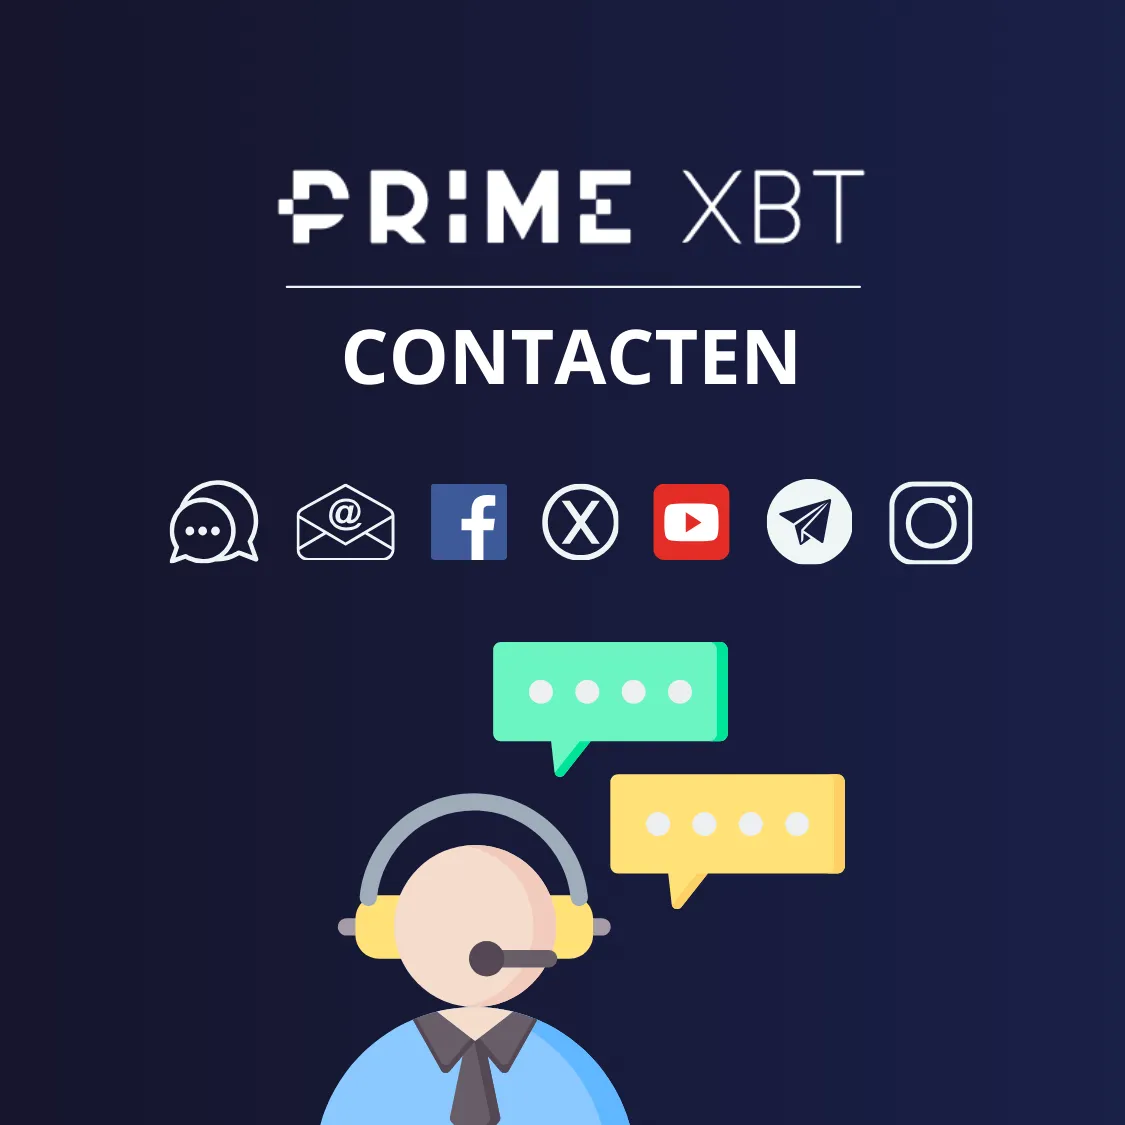 PrimeXBT contacten.